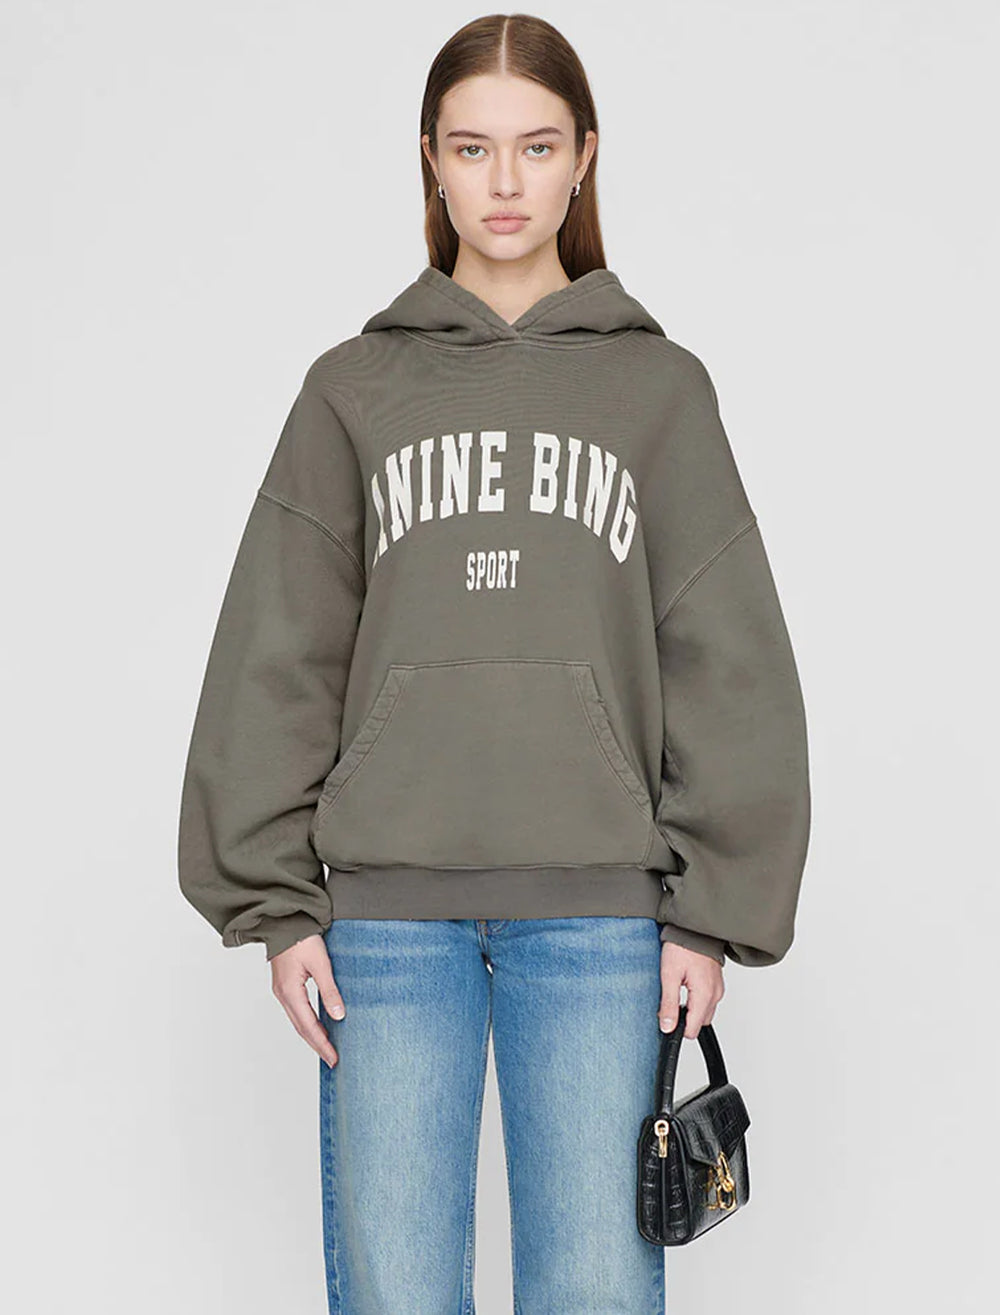 Model wearing Anine Bing's harvey sweatshirt in dusty olive.